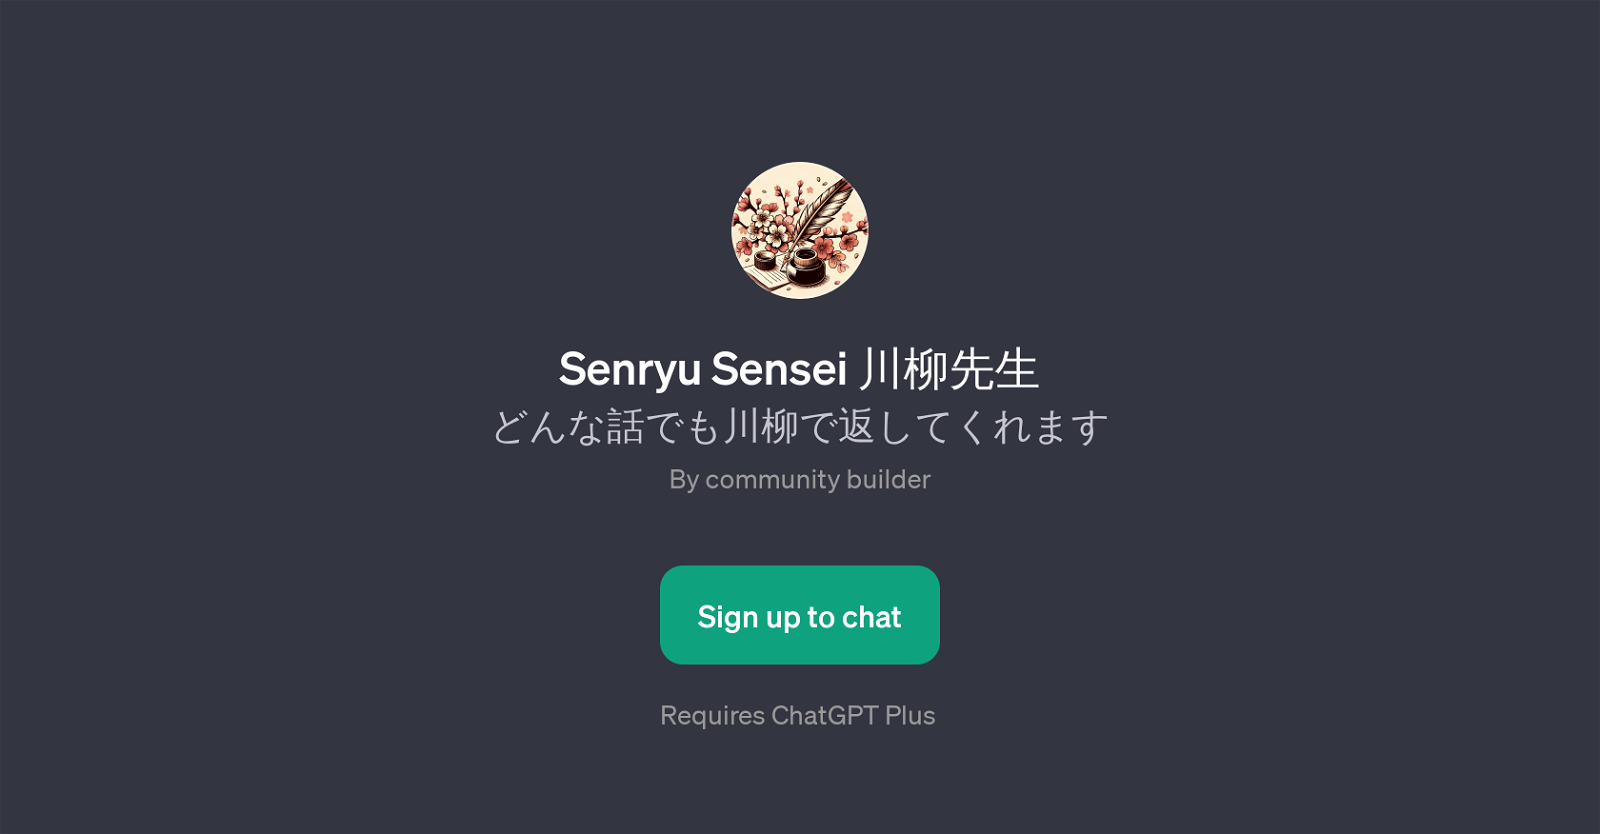 Senryu Sensei website